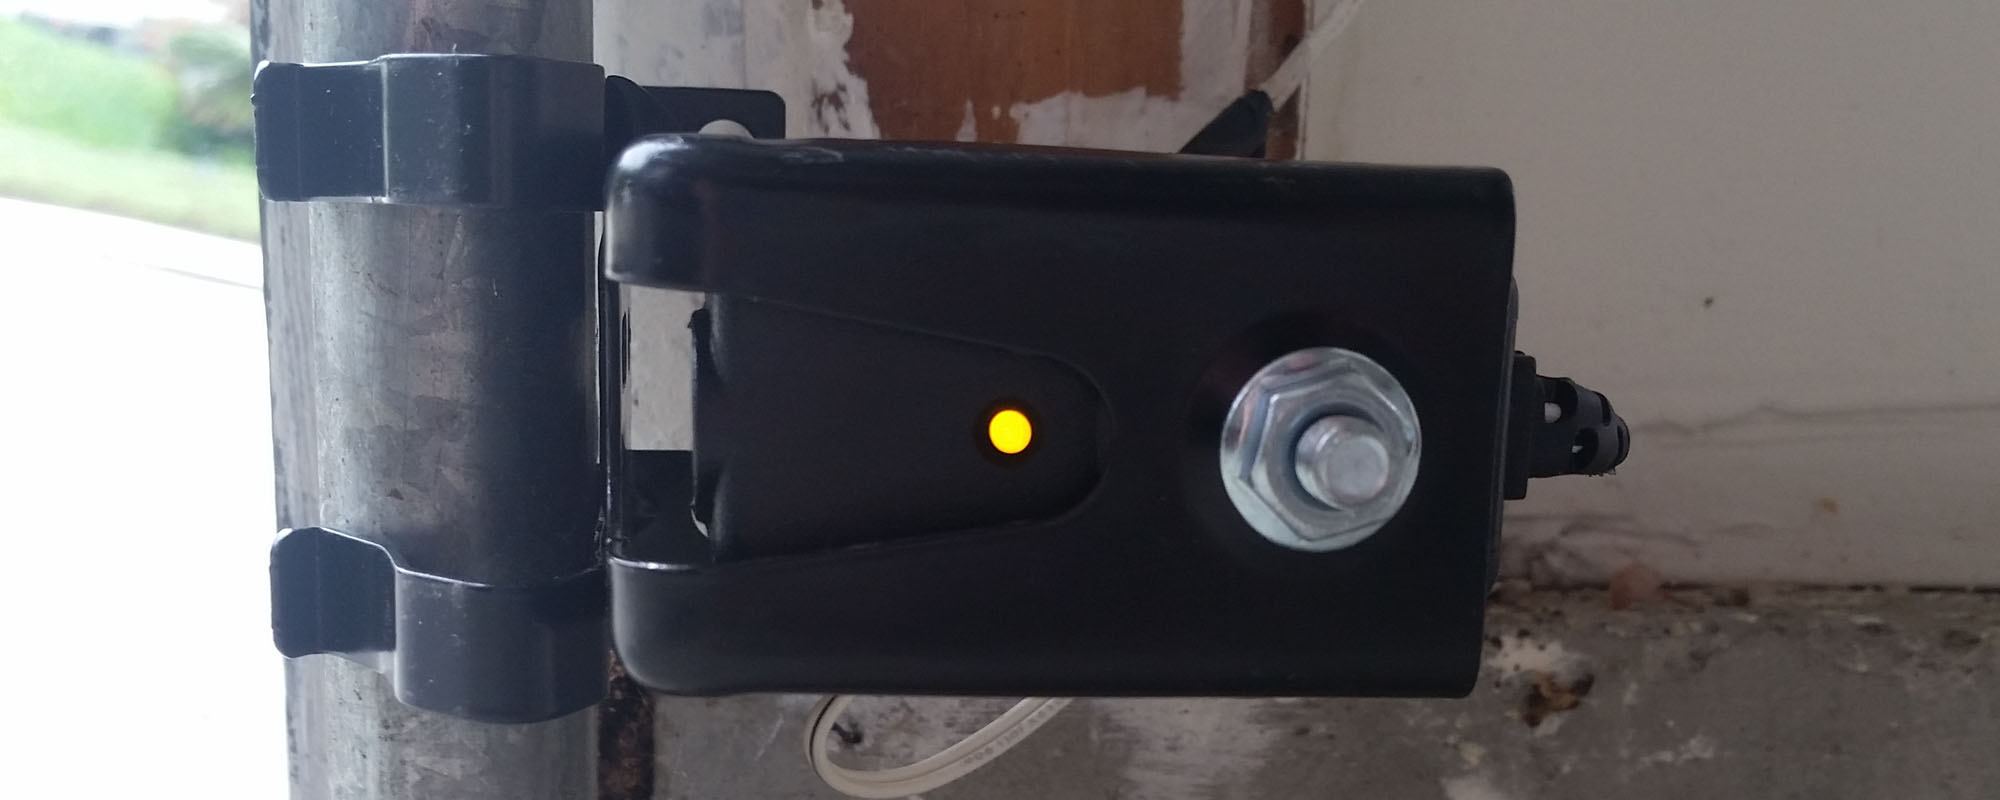 How To Fix Garage Door Opener Sensor